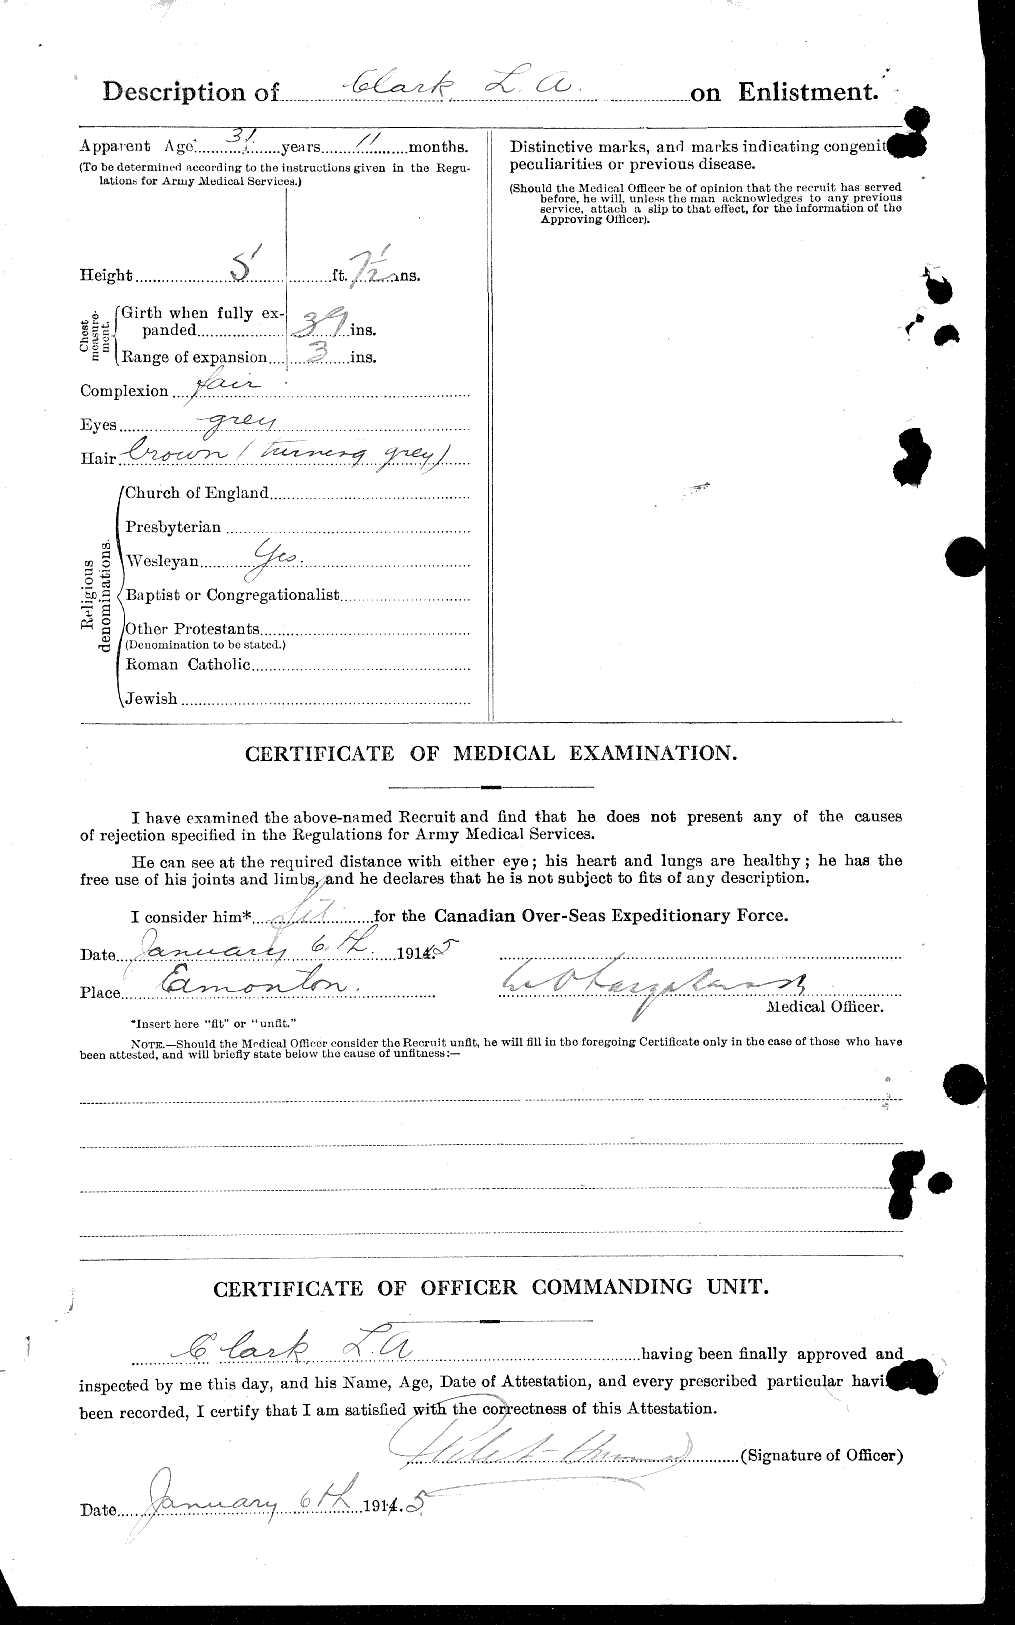 Dossiers du Personnel de la Première Guerre mondiale - CEC 018633b